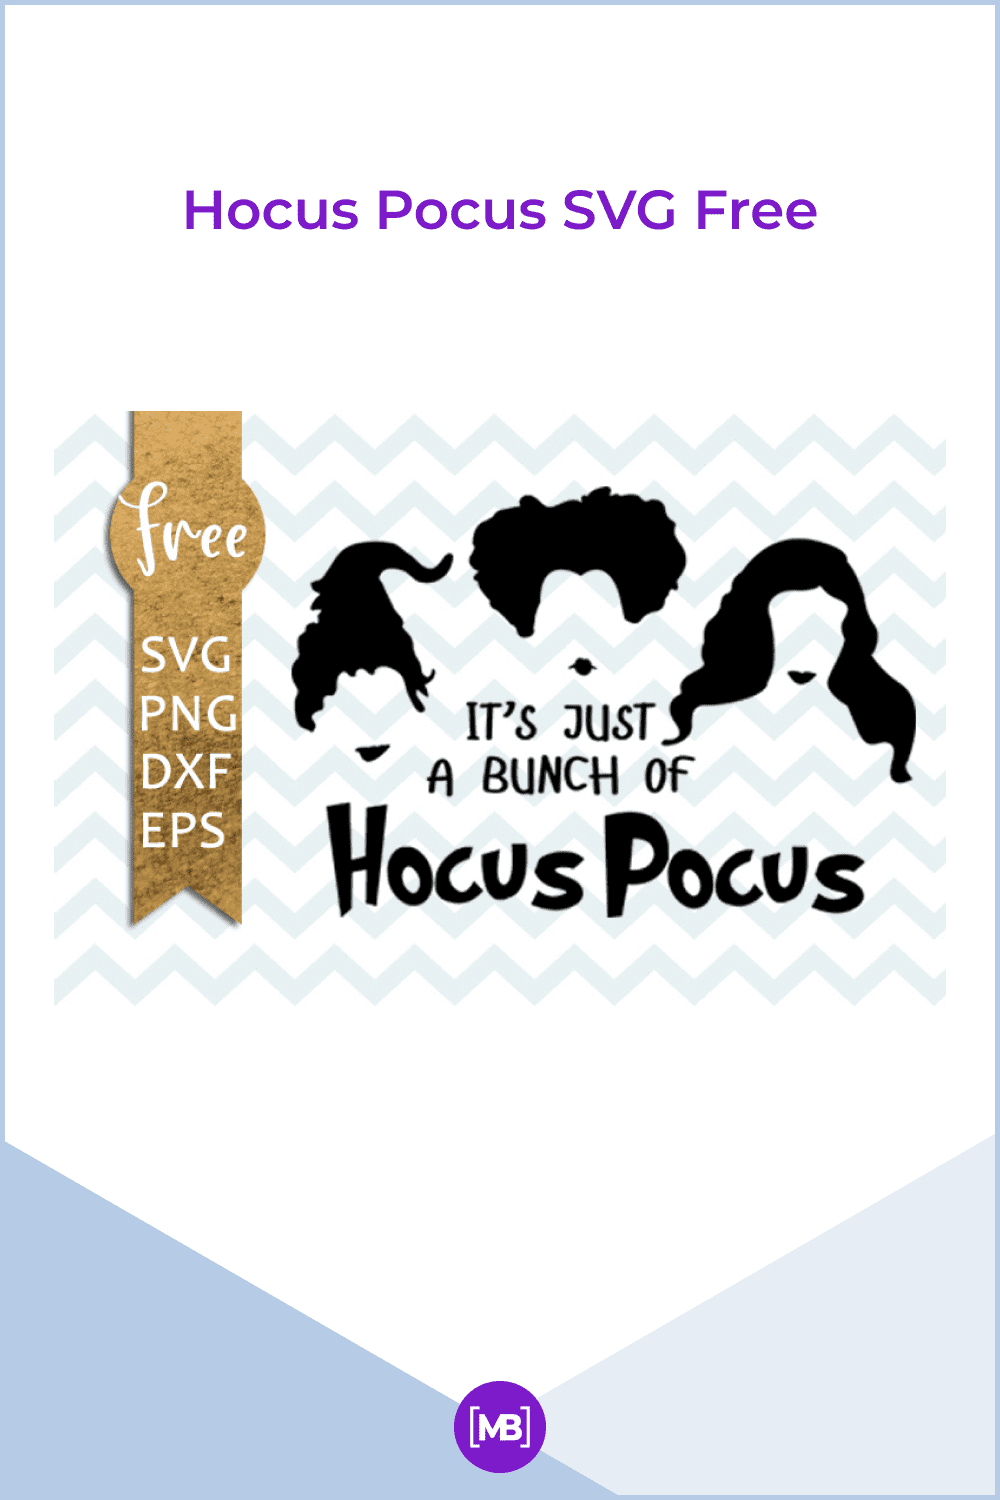 Hocus Pocus SVG Free.